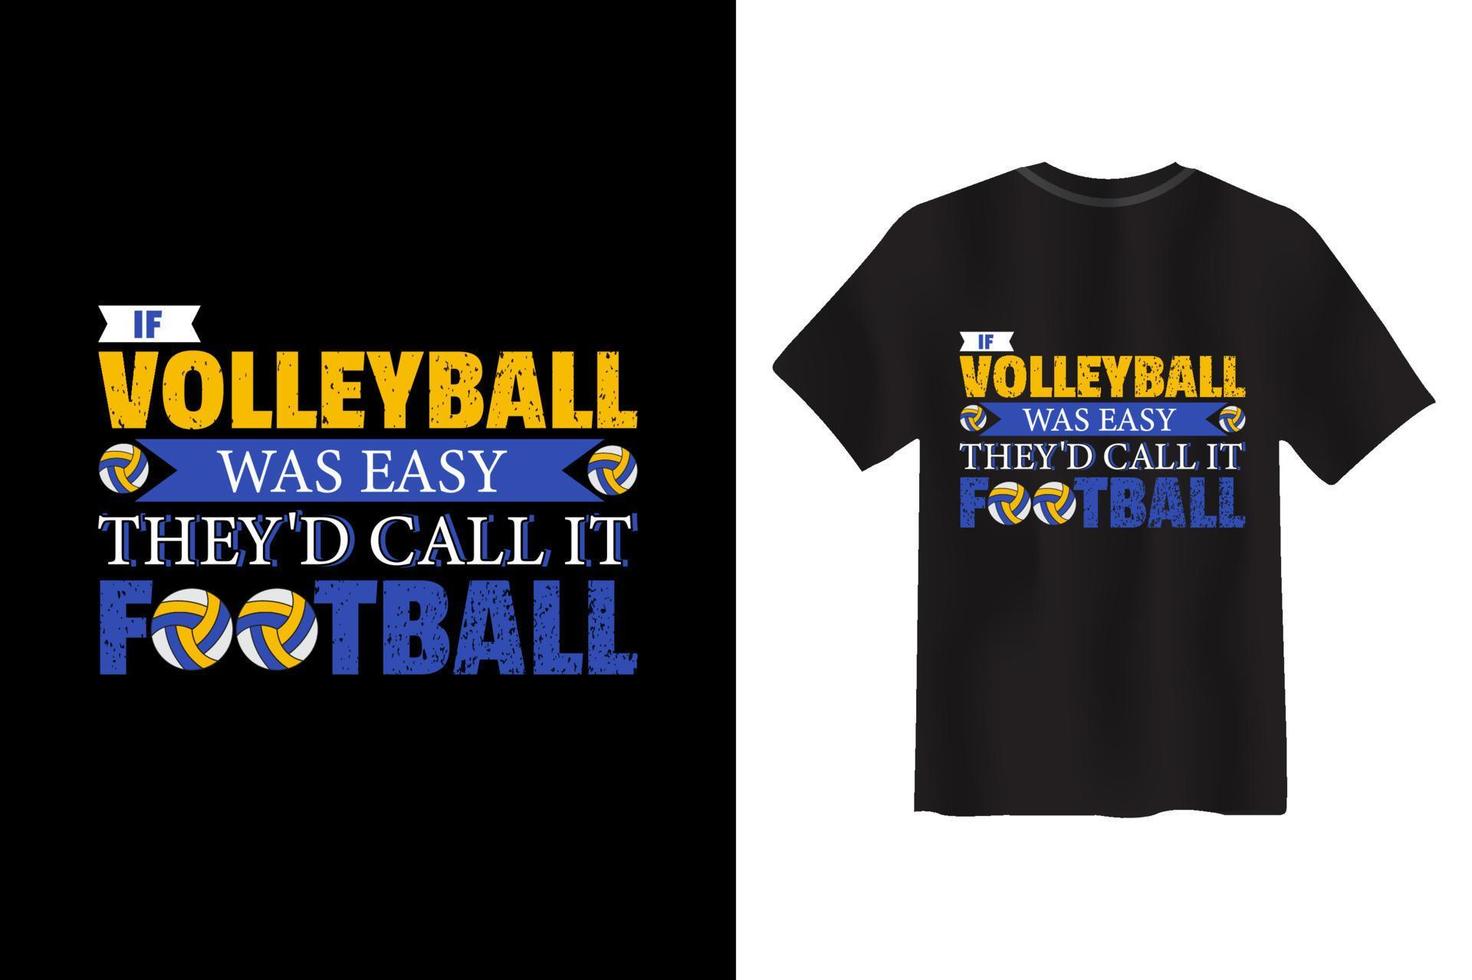 si le volley-ball était facile, ils l'appelleraient la conception de t-shirts de volley-ball de football vecteur